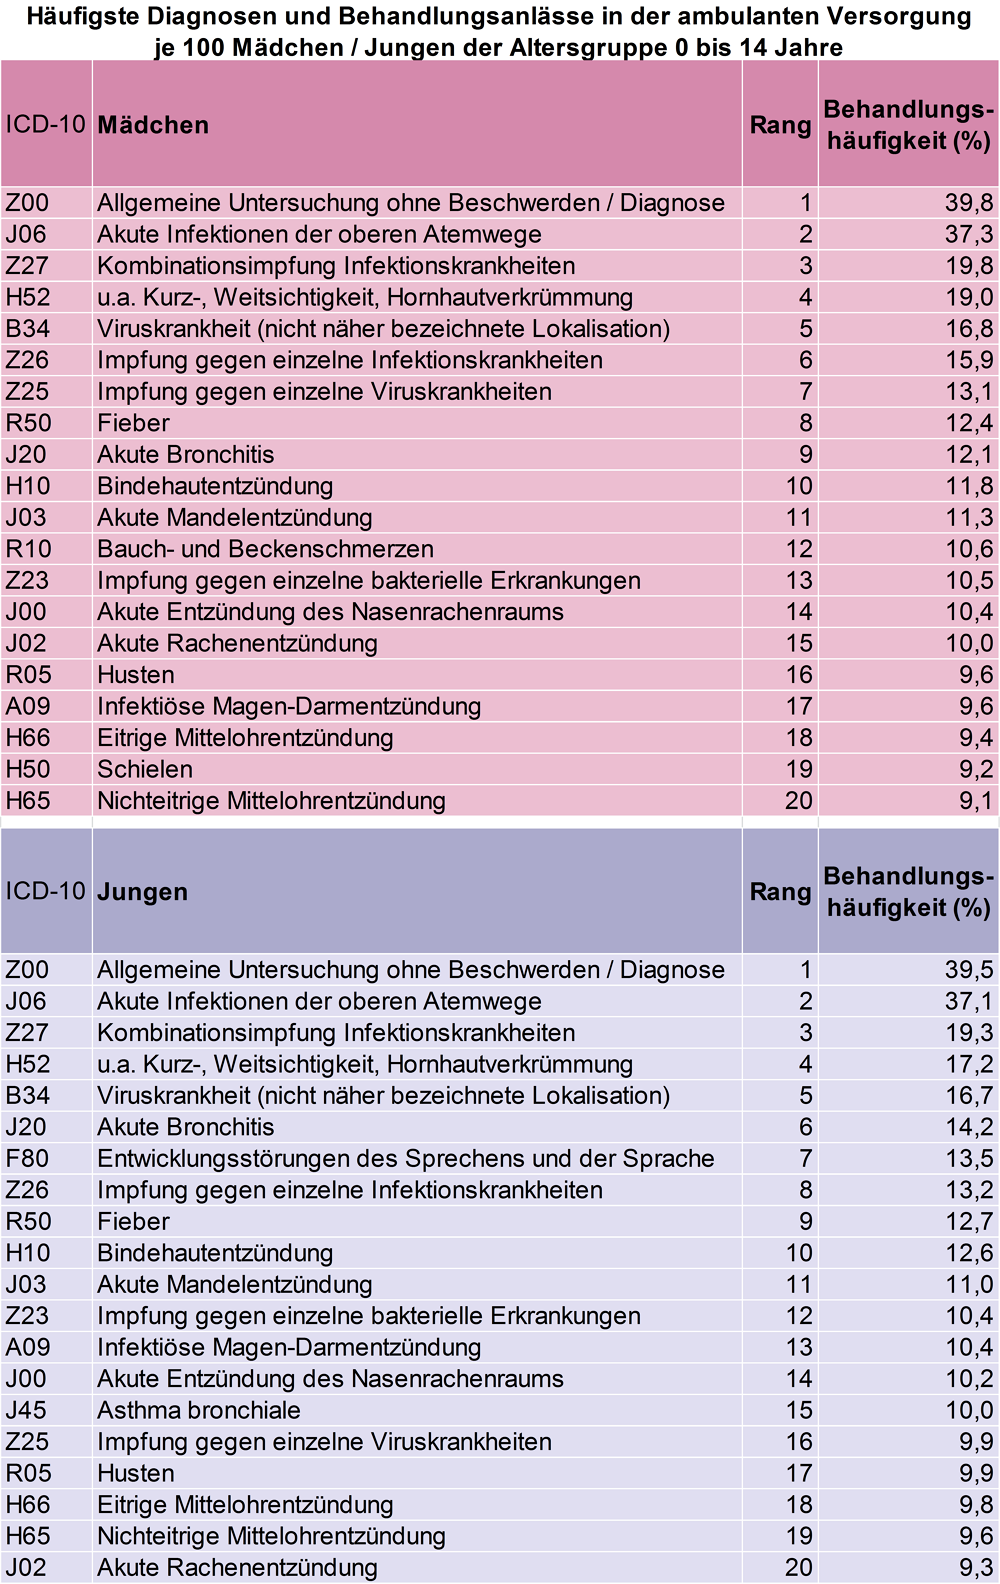 Tabelle mit den häufigsten Diagnosen und Behandlungsanlässen in der ambulanten Versorgung, jeweils für Mädchen und Jungen bis 14 Jahre